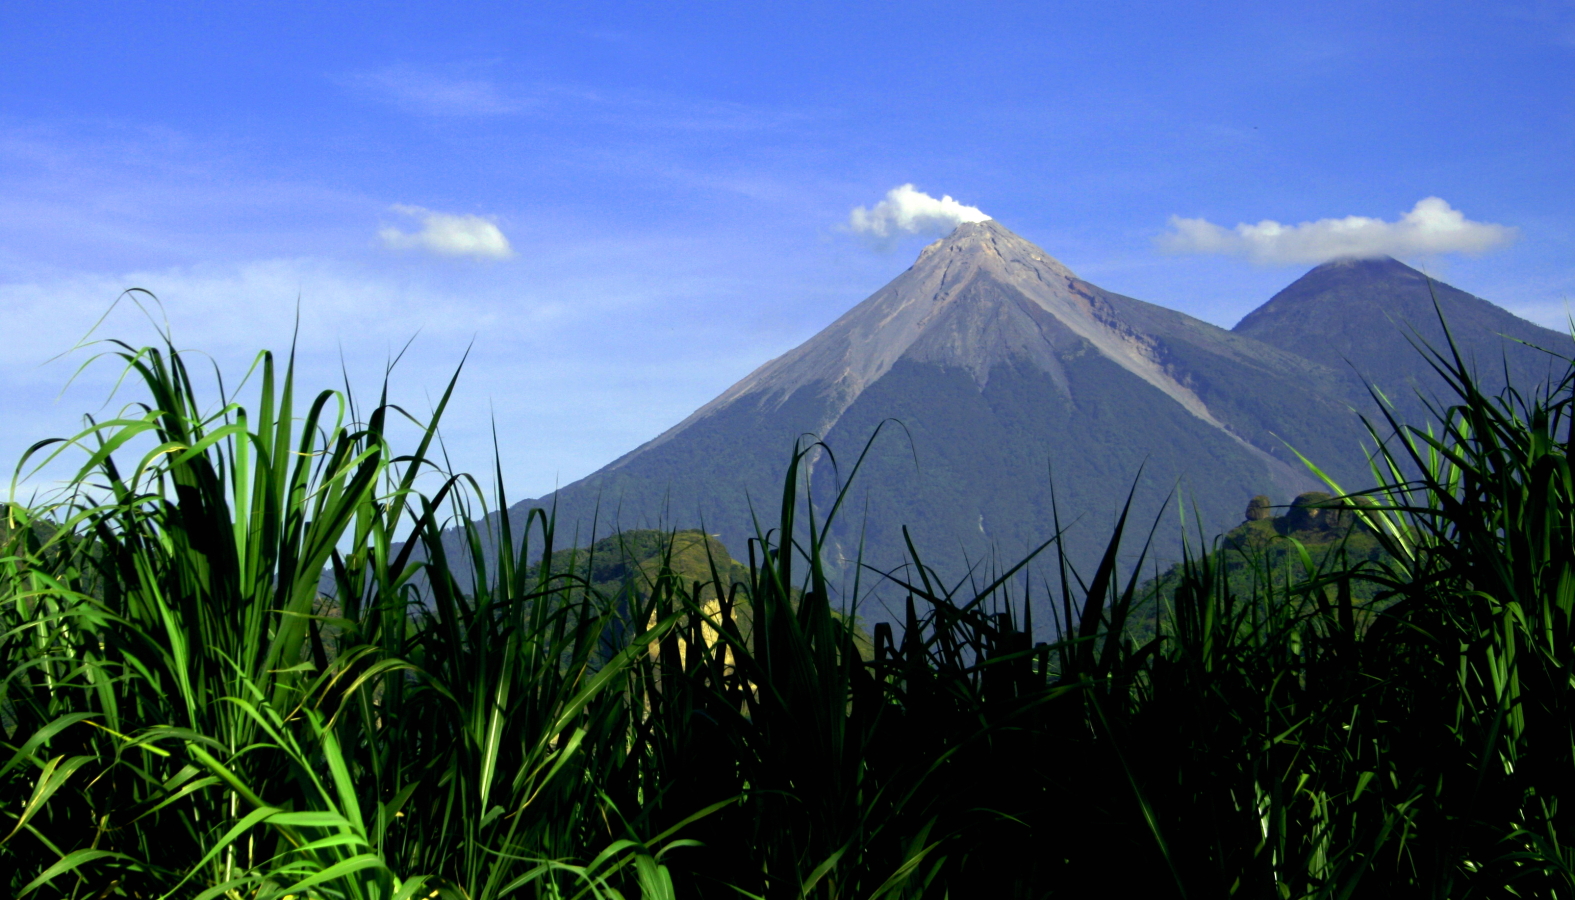 Guatemala Western Volcanic Highlands, Volcan Acatenango and Volcan Fuego, Volcan de Fuego y Acatenango, Walkopedia